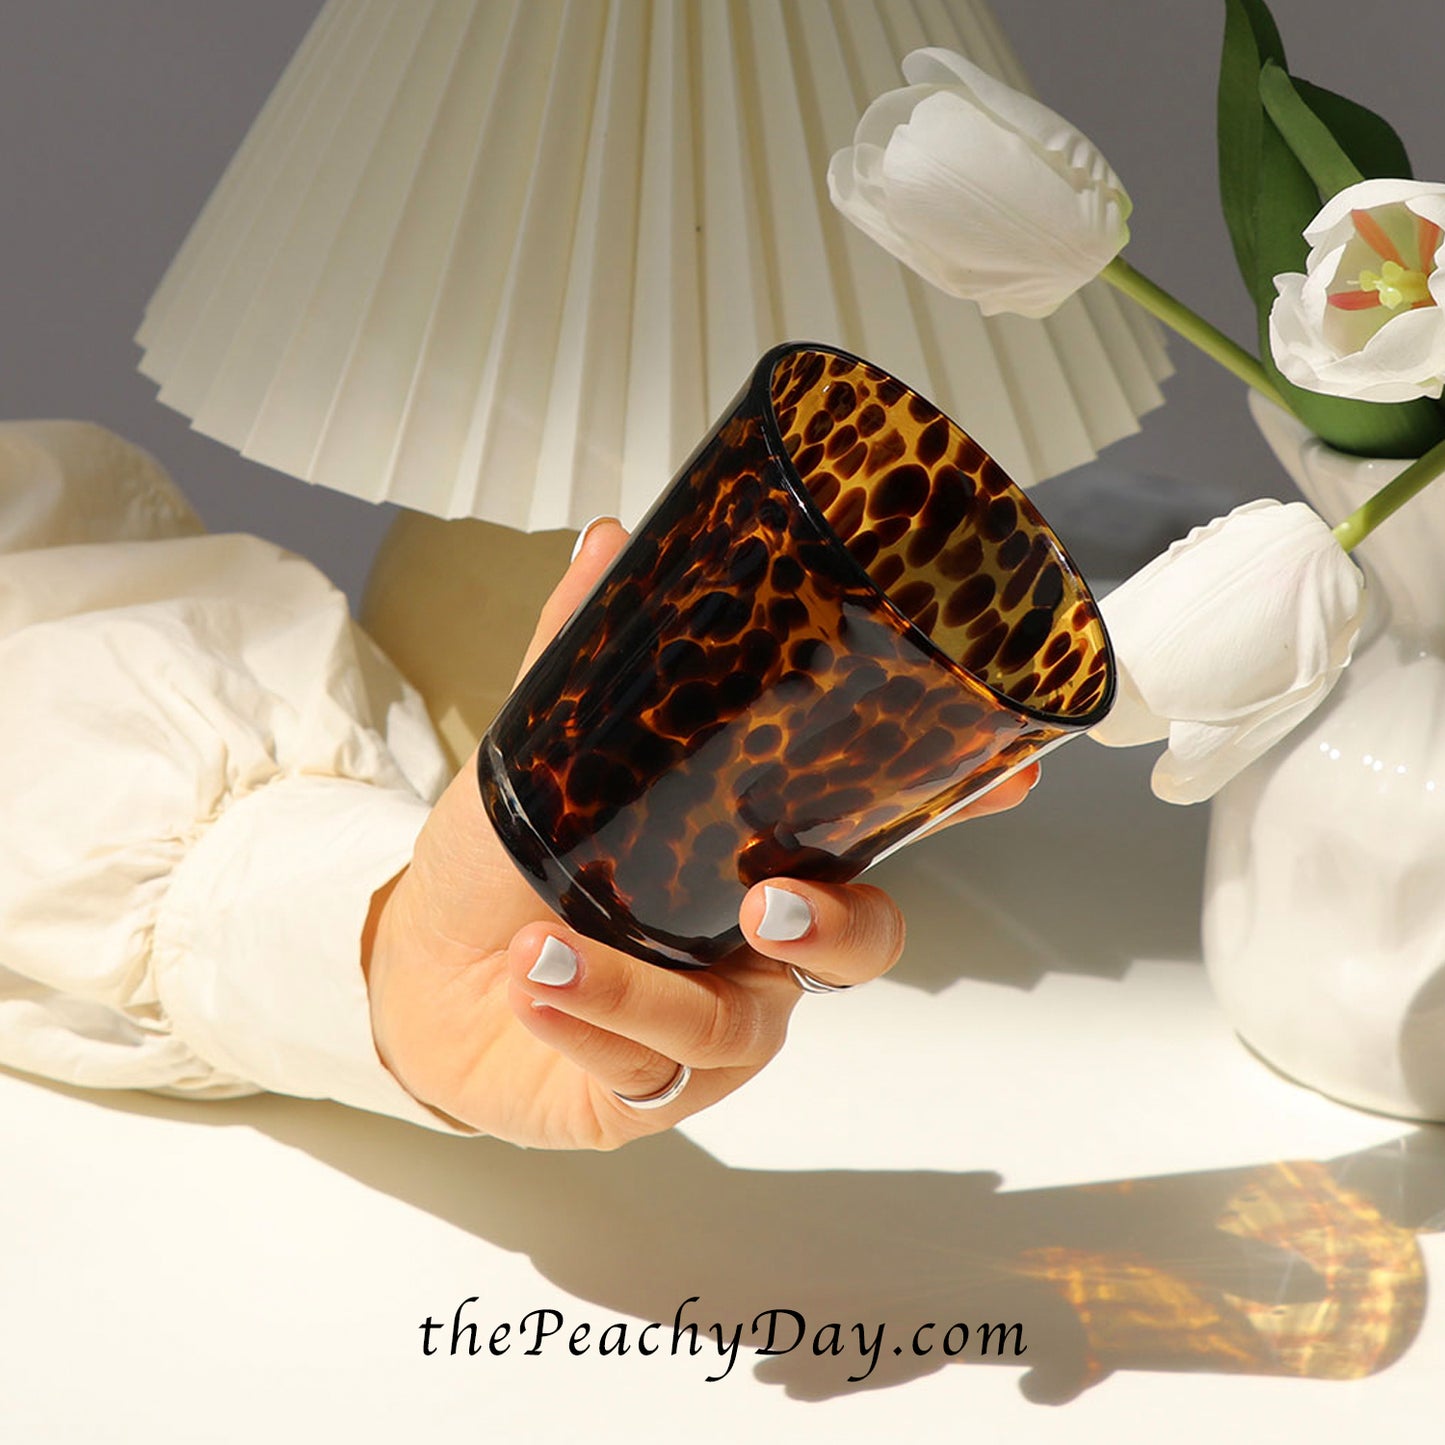 Hawksbill Amber Glass Vase